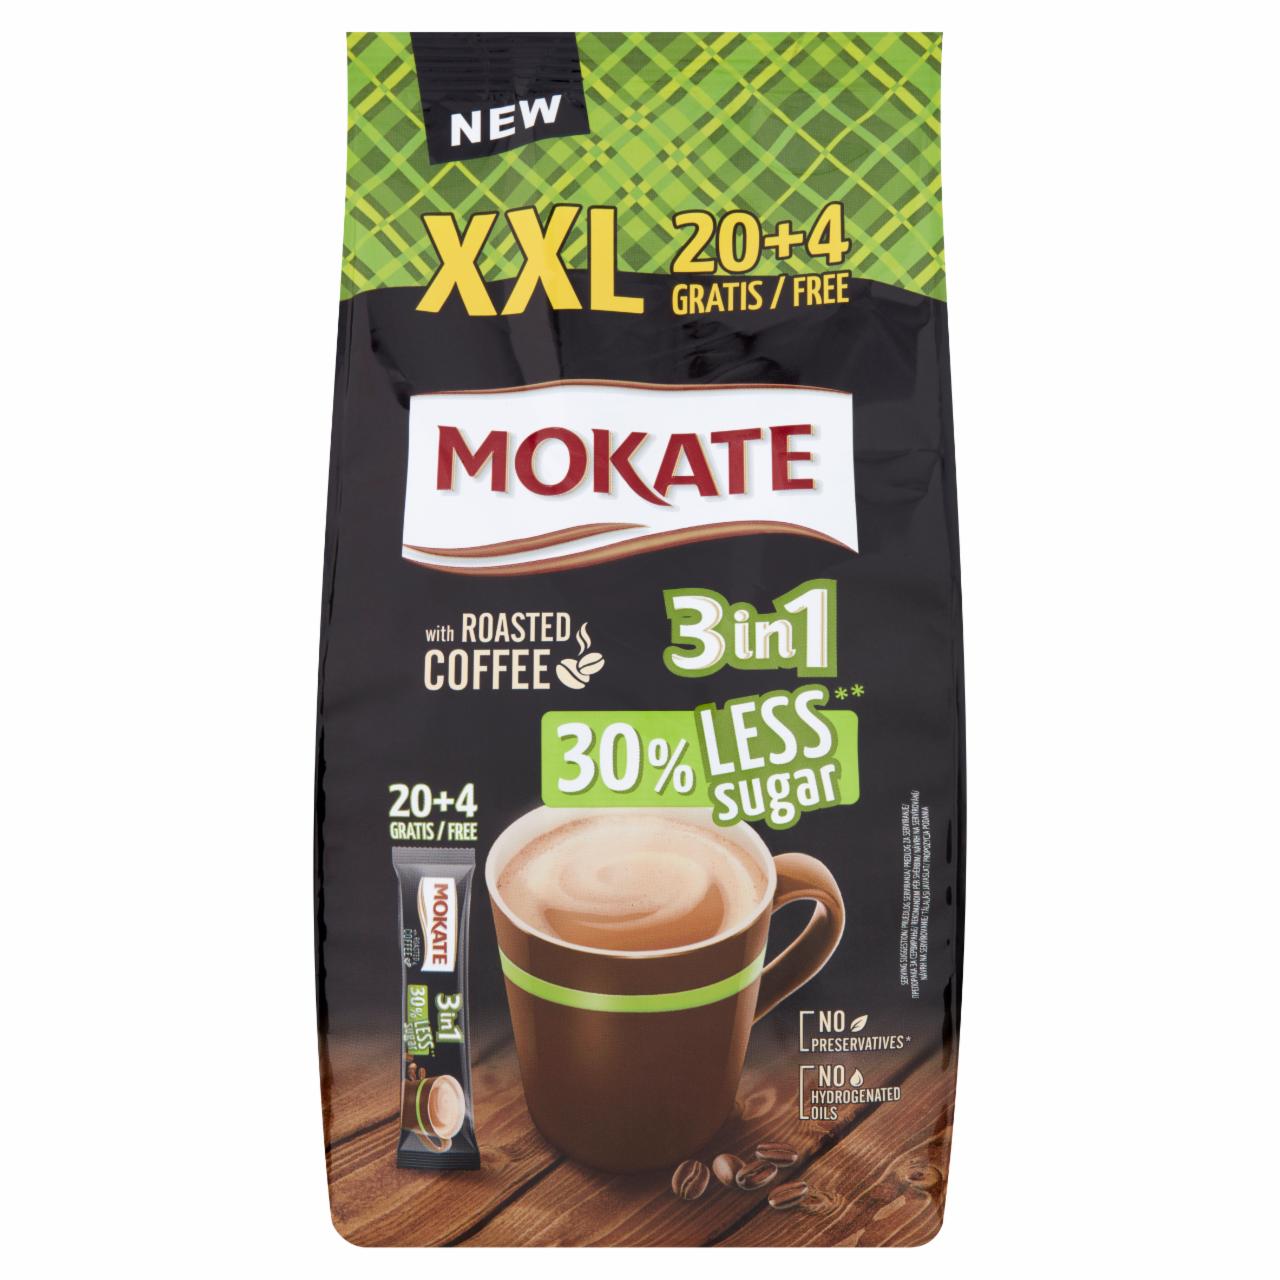 Képek - Mokate 3in1 azonnal oldódó kávéspecialitás csökkentett cukortartalommal 24 x 17 g (408 g)